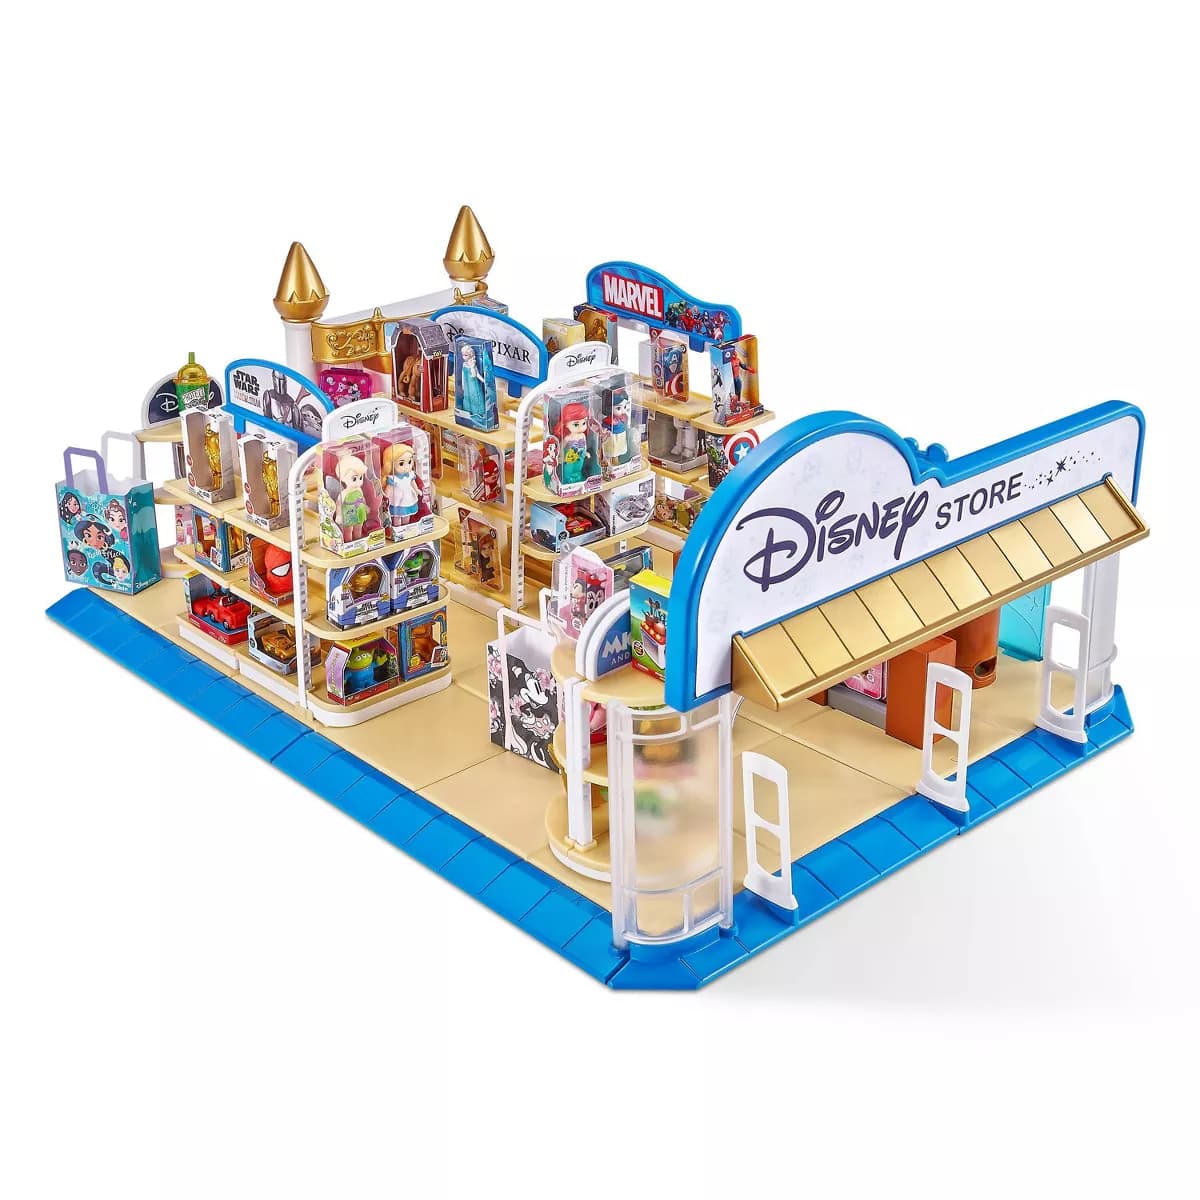 Disney Store Edition Mini Brands